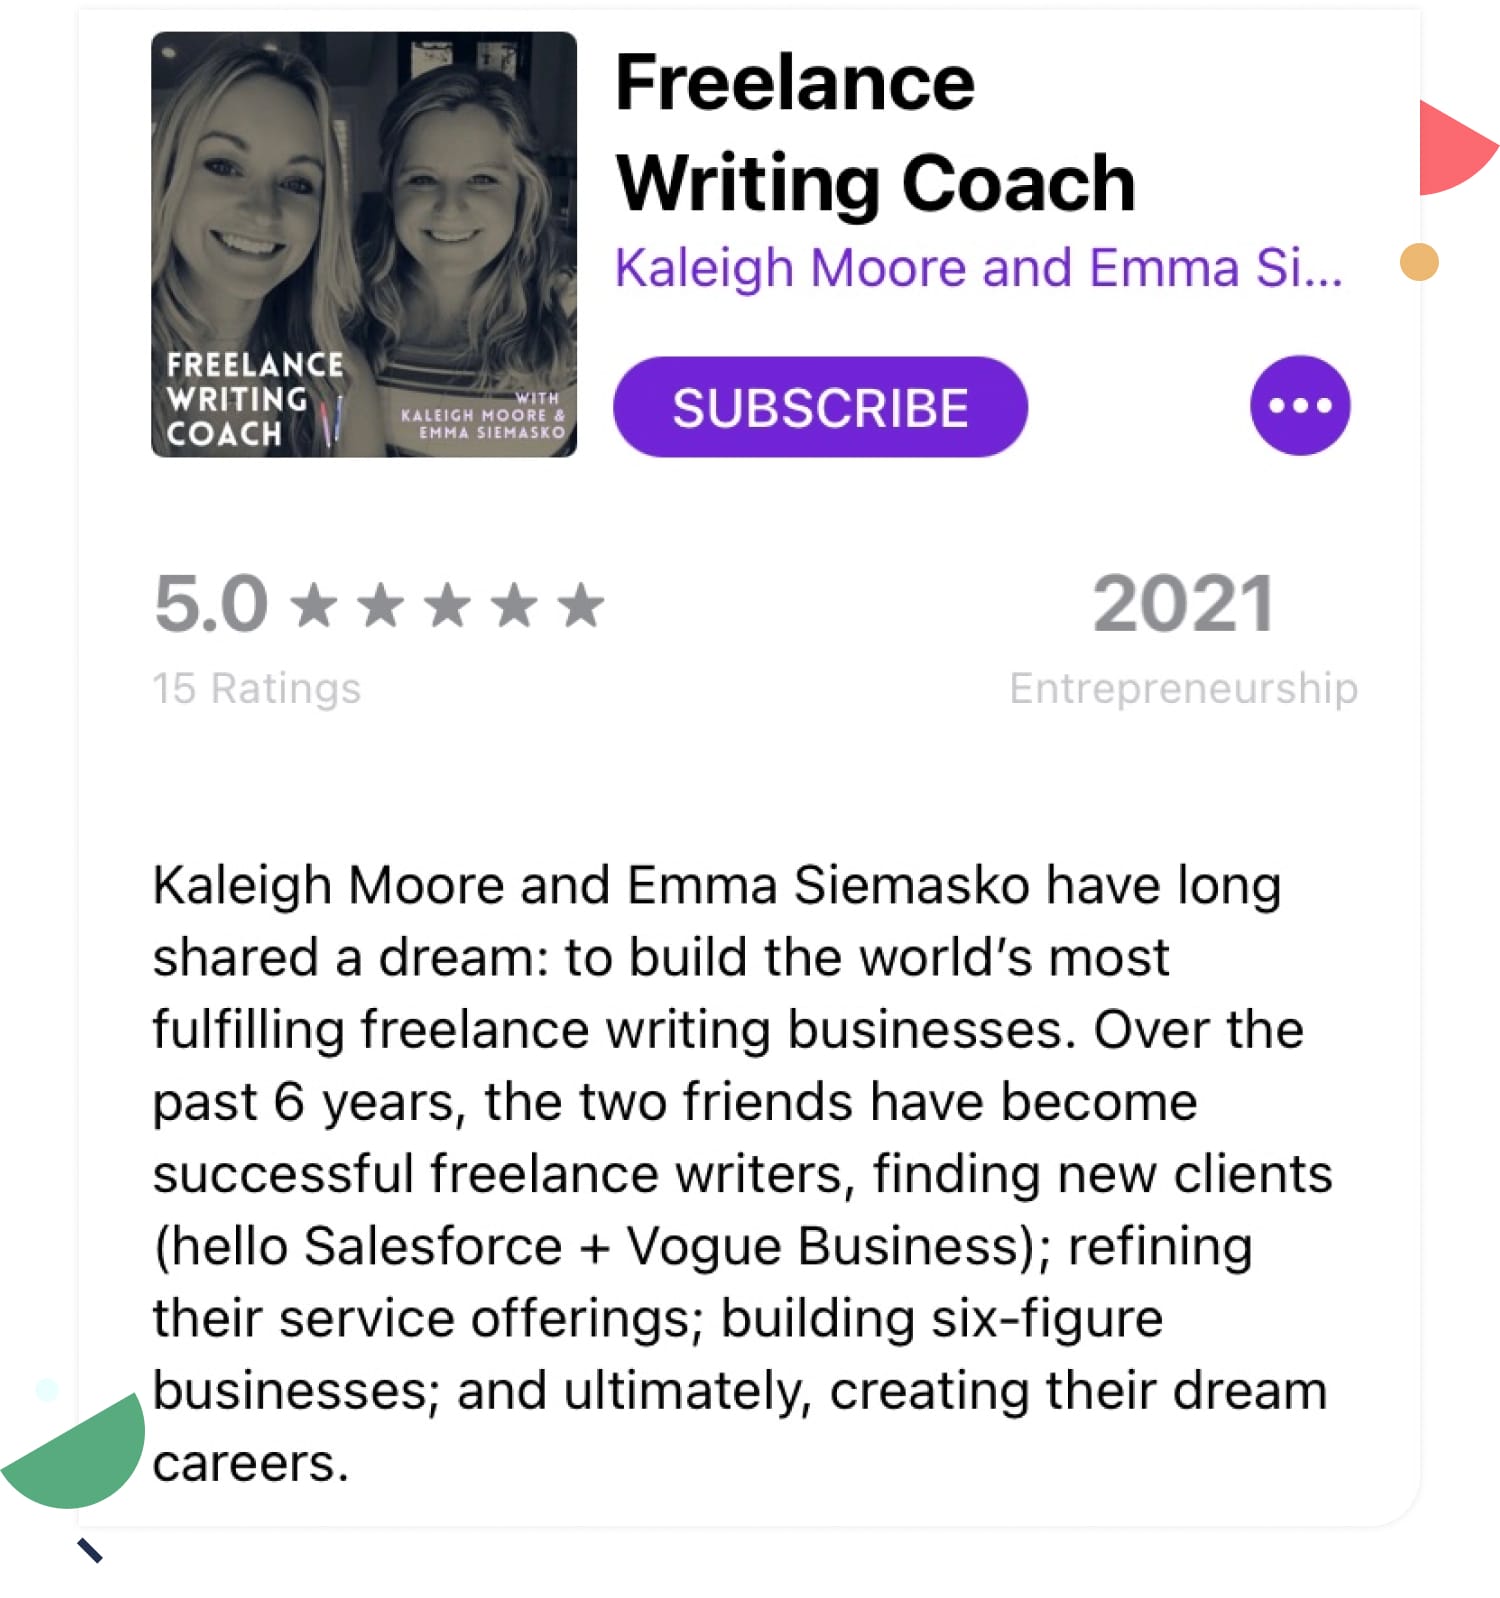 Freelance Writing Coach podcast